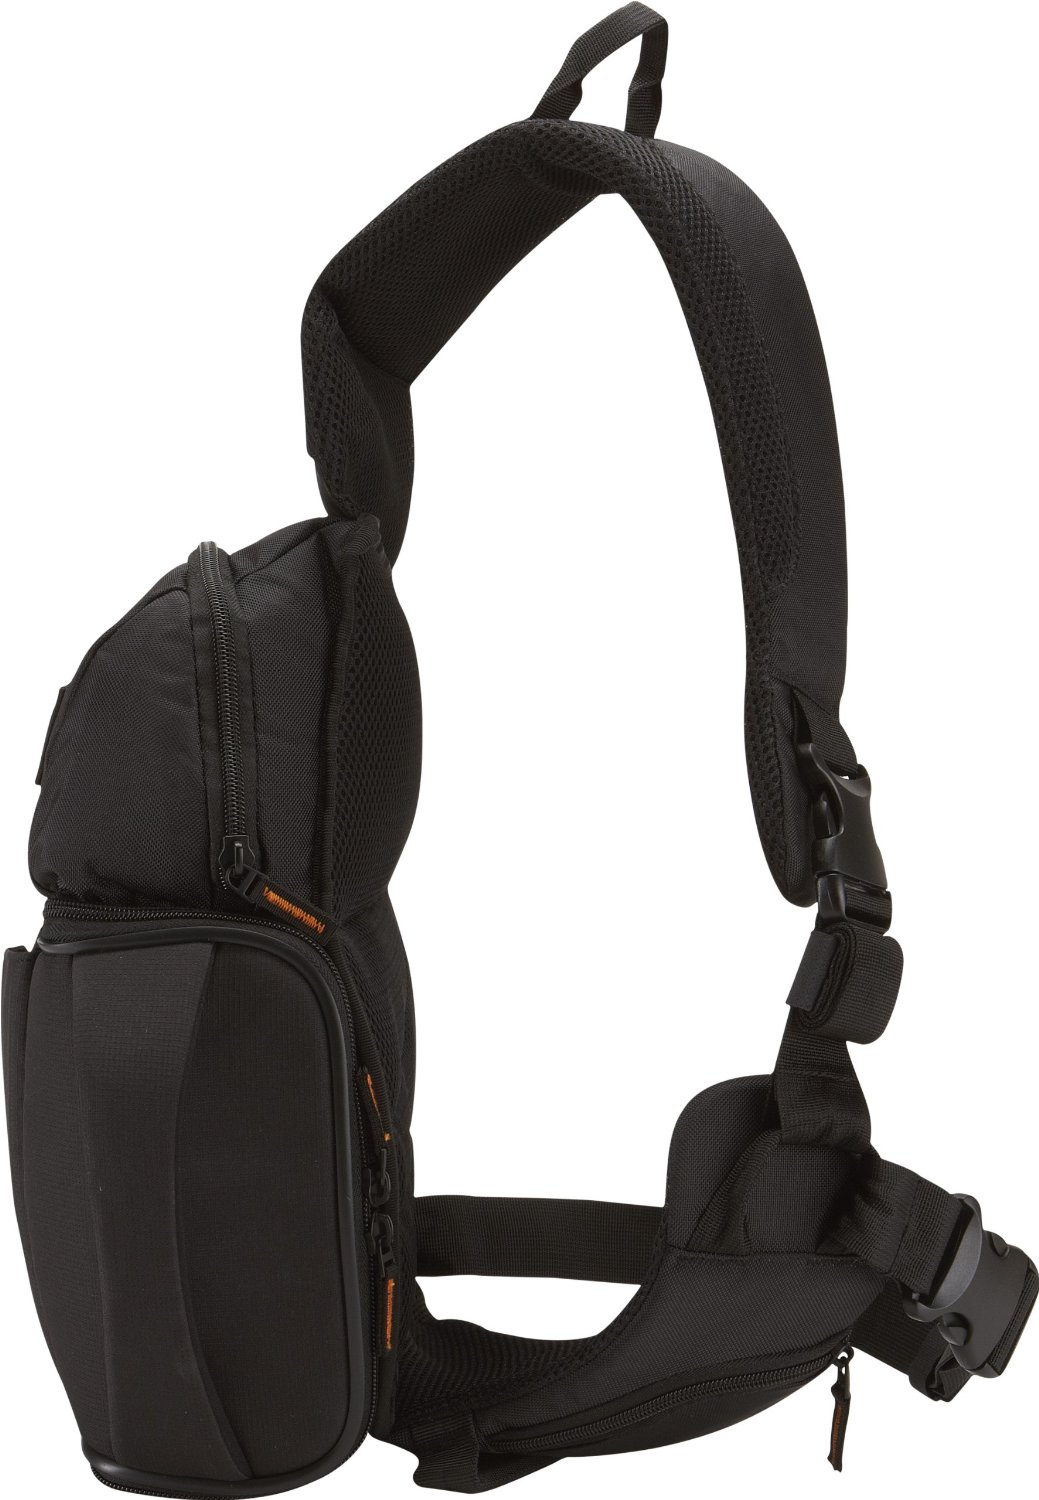 Case Logic SLR camera sling bag (Black) $30 shipped (Reg. $80)